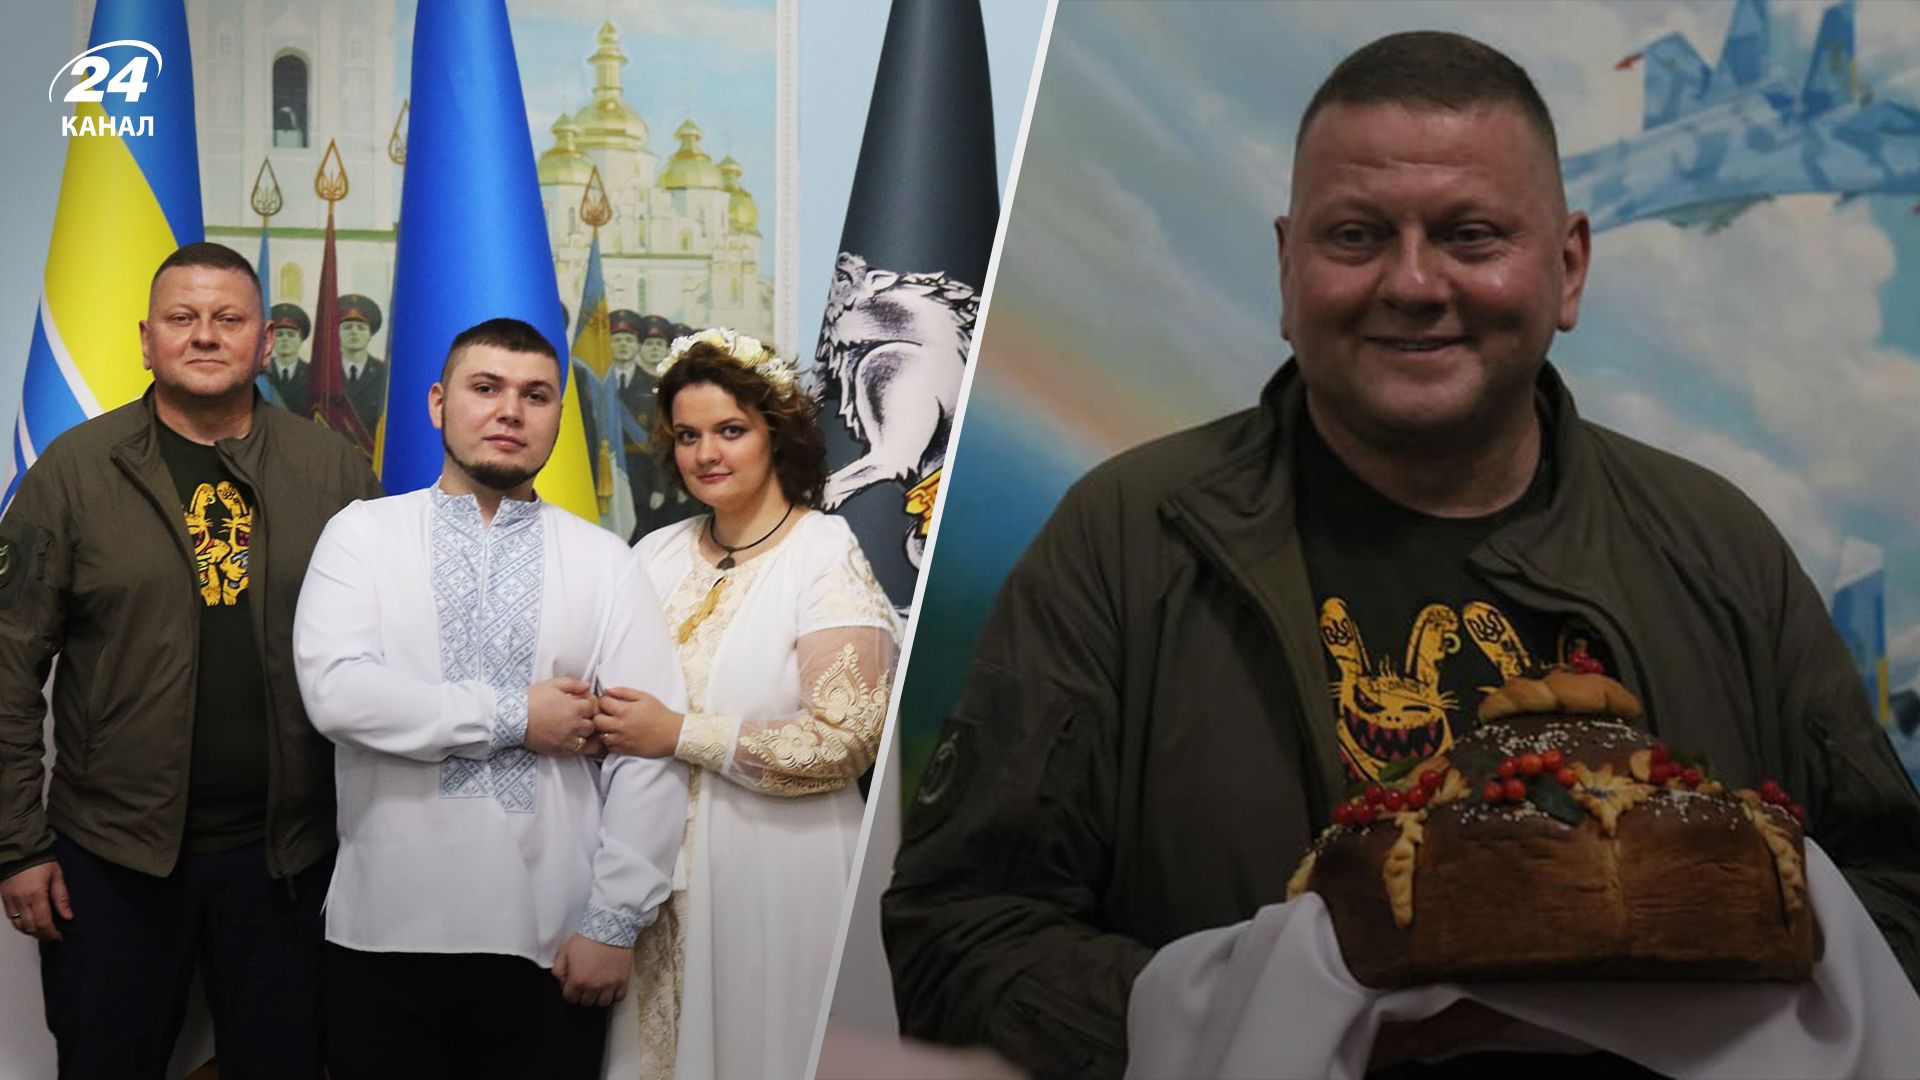 Заохочення за гарну службу: як Залужний відвідав весілля звичайного українського воїна - 24 Канал